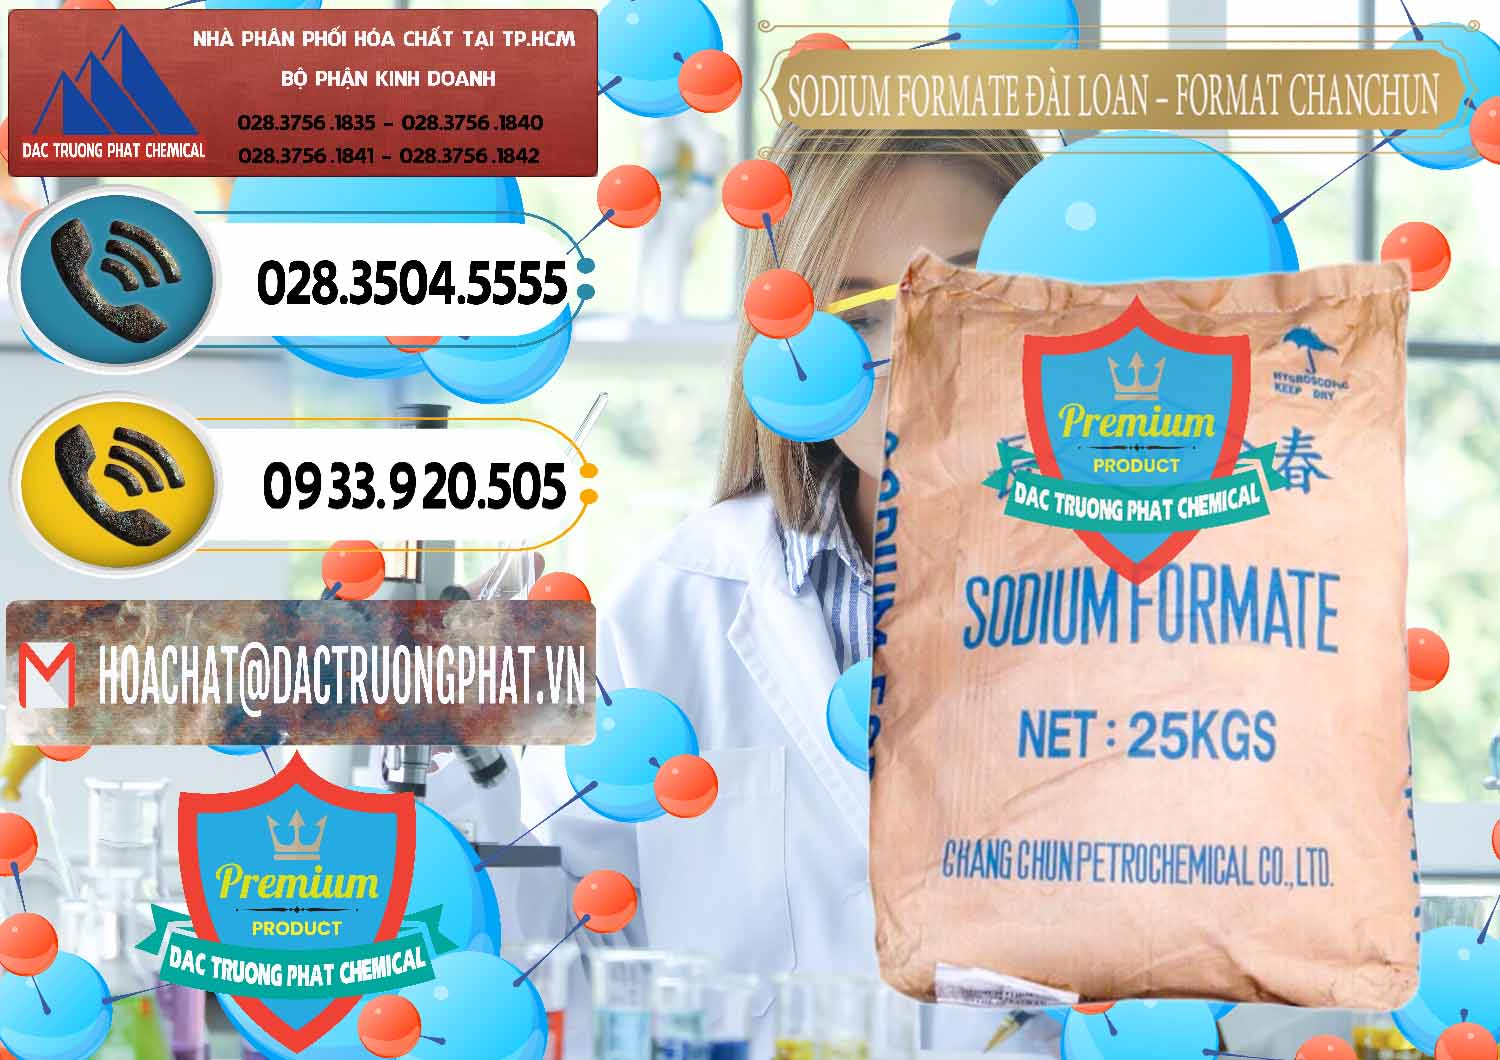 Cty chuyên kinh doanh & bán Sodium Formate - Natri Format Đài Loan Taiwan - 0141 - Nhà nhập khẩu - phân phối hóa chất tại TP.HCM - hoachatdetnhuom.vn